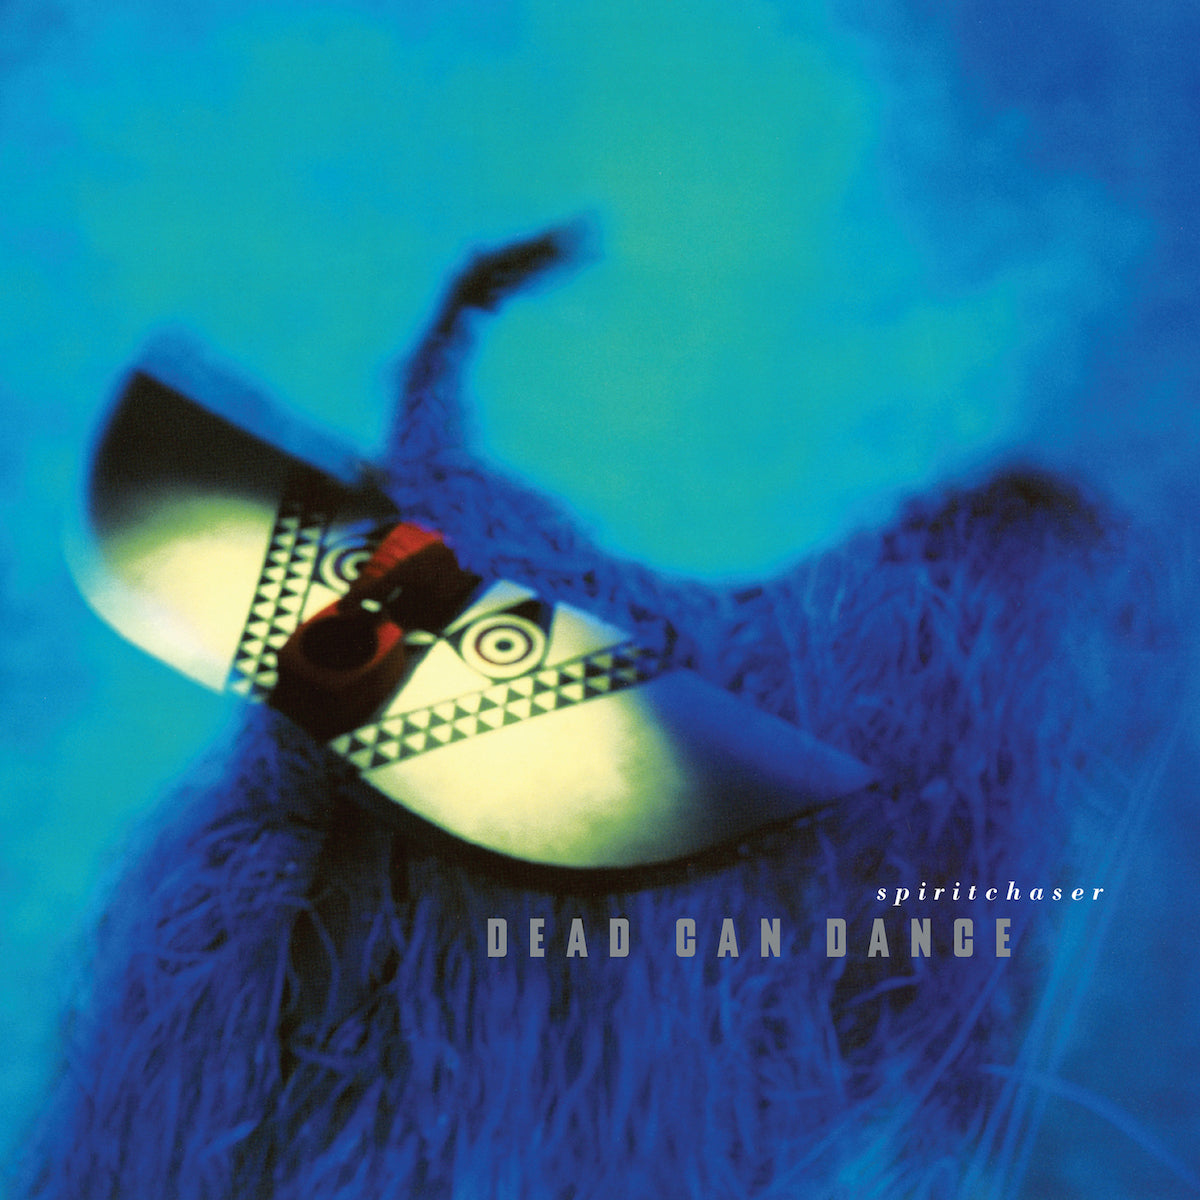 DEAD CAN DANCE - SPIRITCHASER Vinyl 2xLP